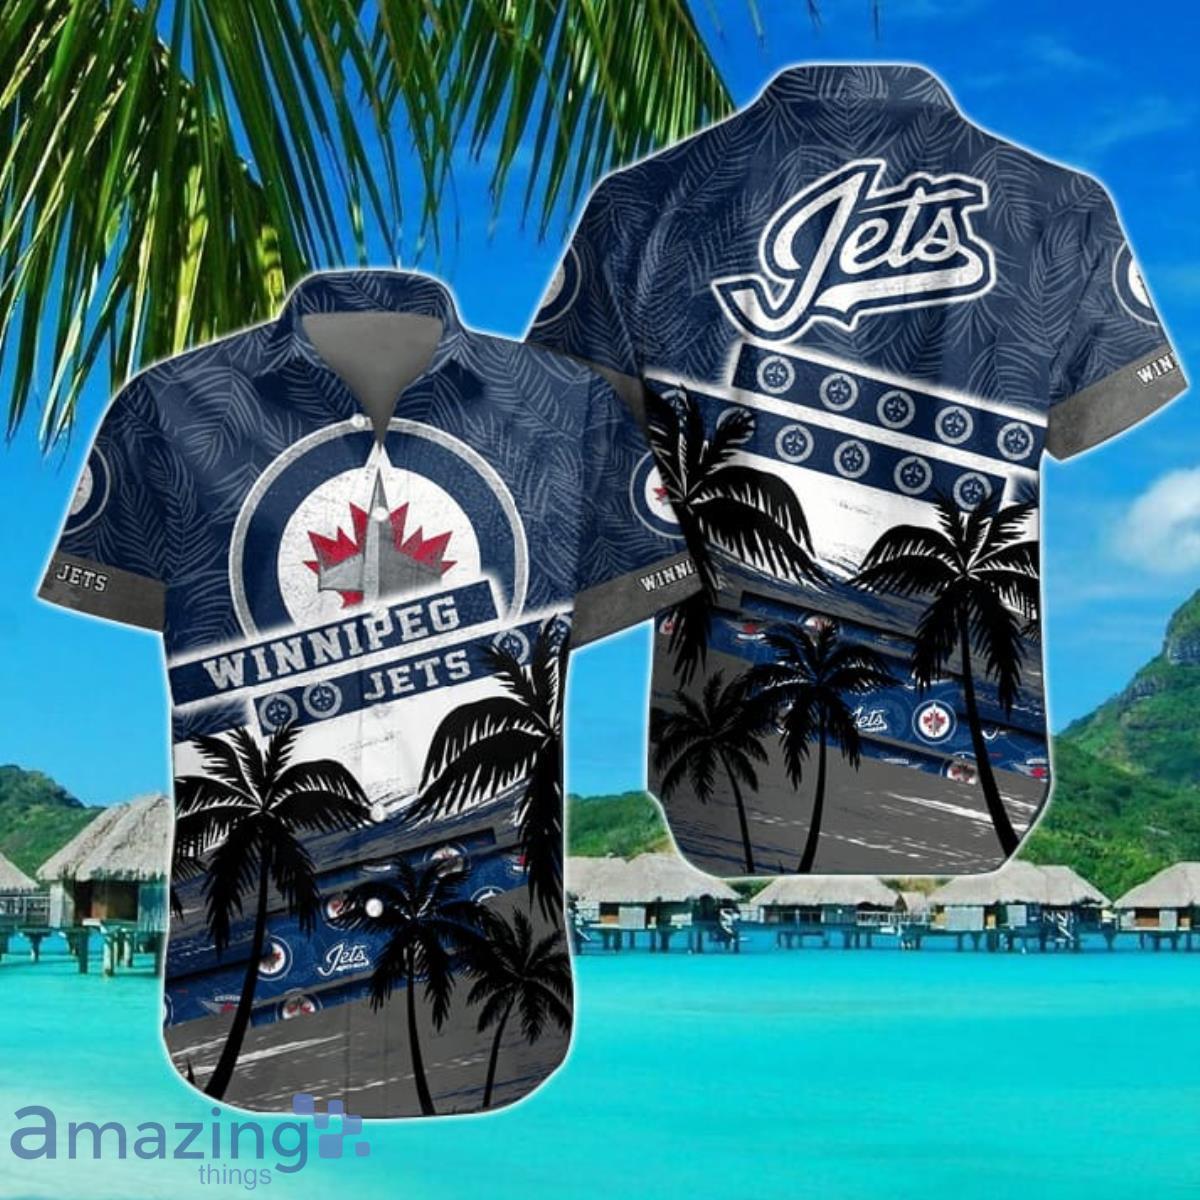 Winnipeg Jets Gear, Jets Anniversary Jerseys, Winnipeg Jets Clothing, Jets  Pro Shop, Jets Hockey Apparel